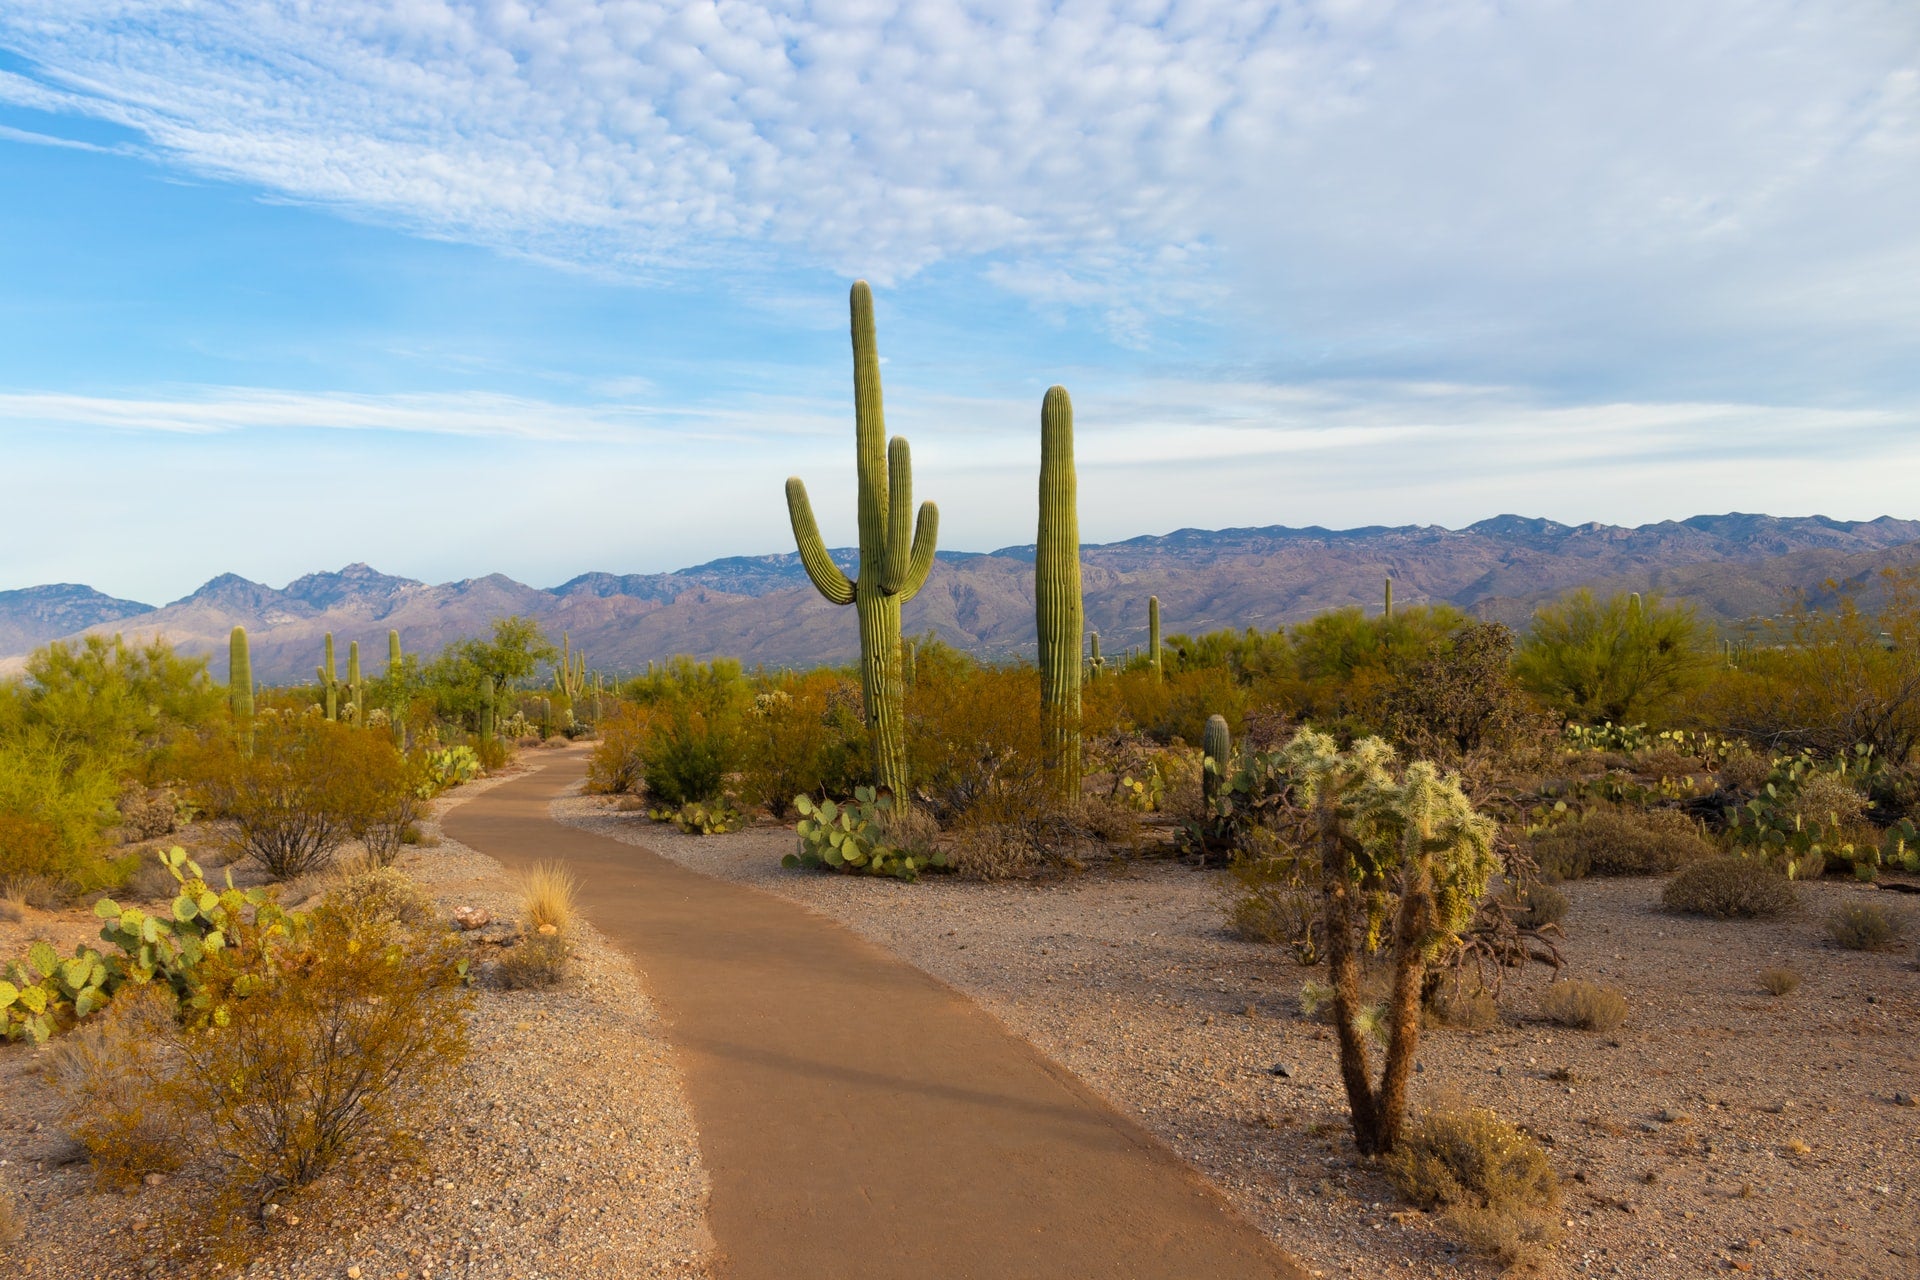 Arizona desert with cacti